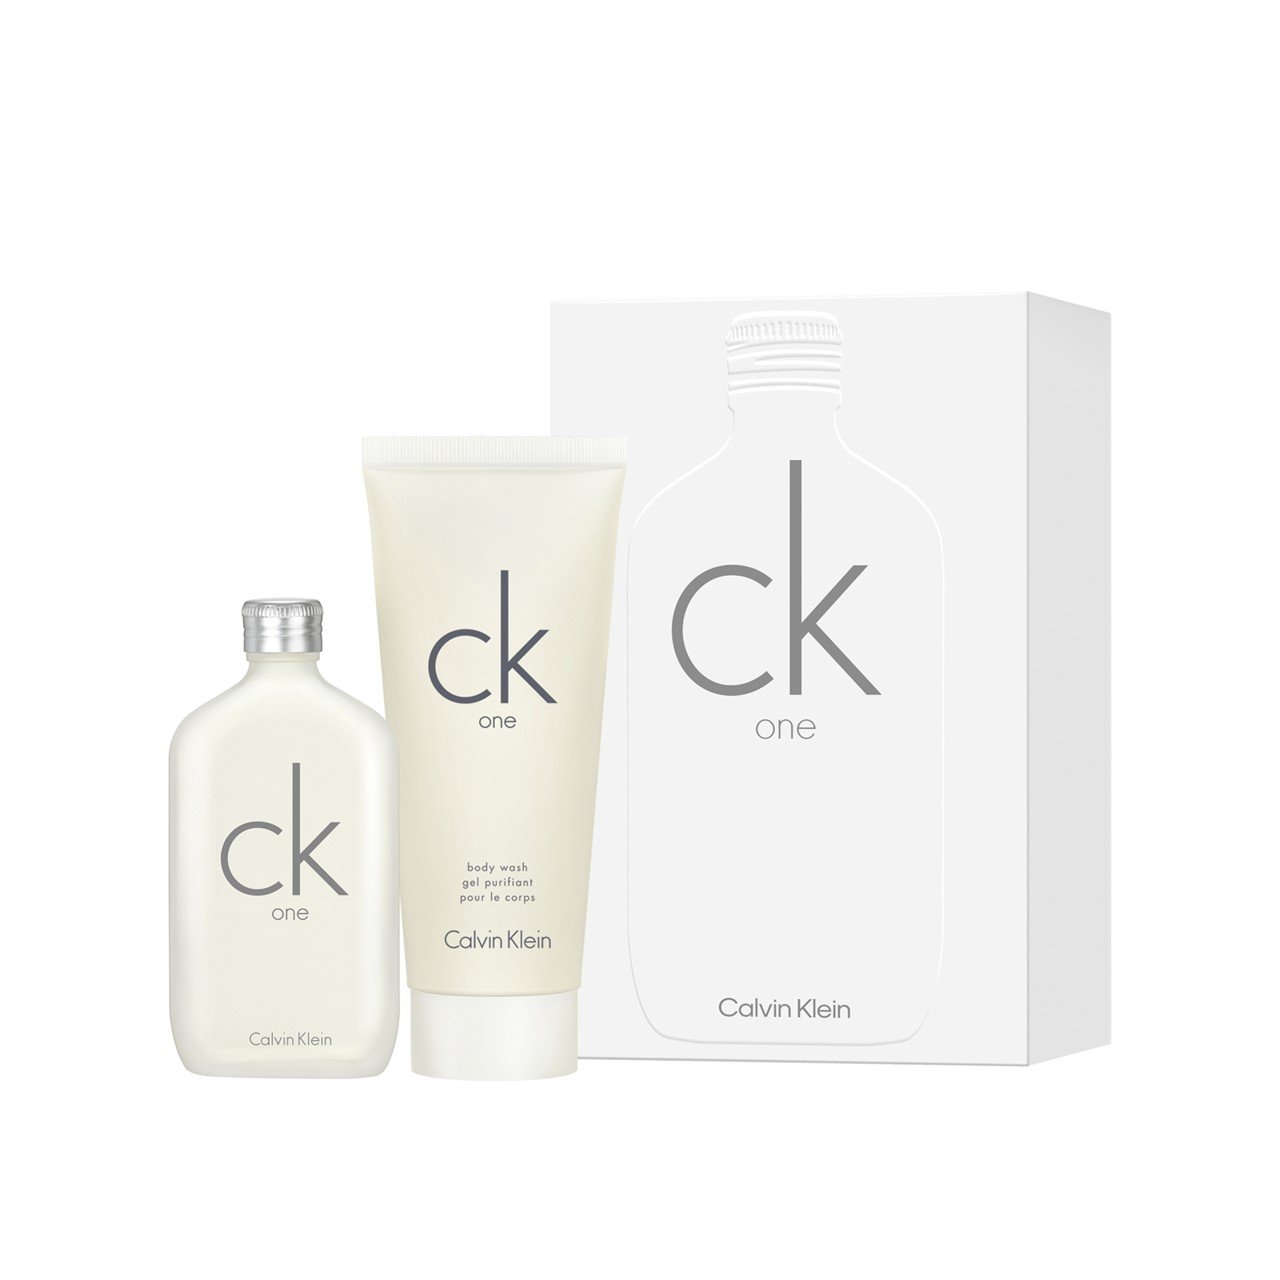 Buy Calvin Klein CK One Eau de Toilette 50ml + Body Wash 100ml · World Wide